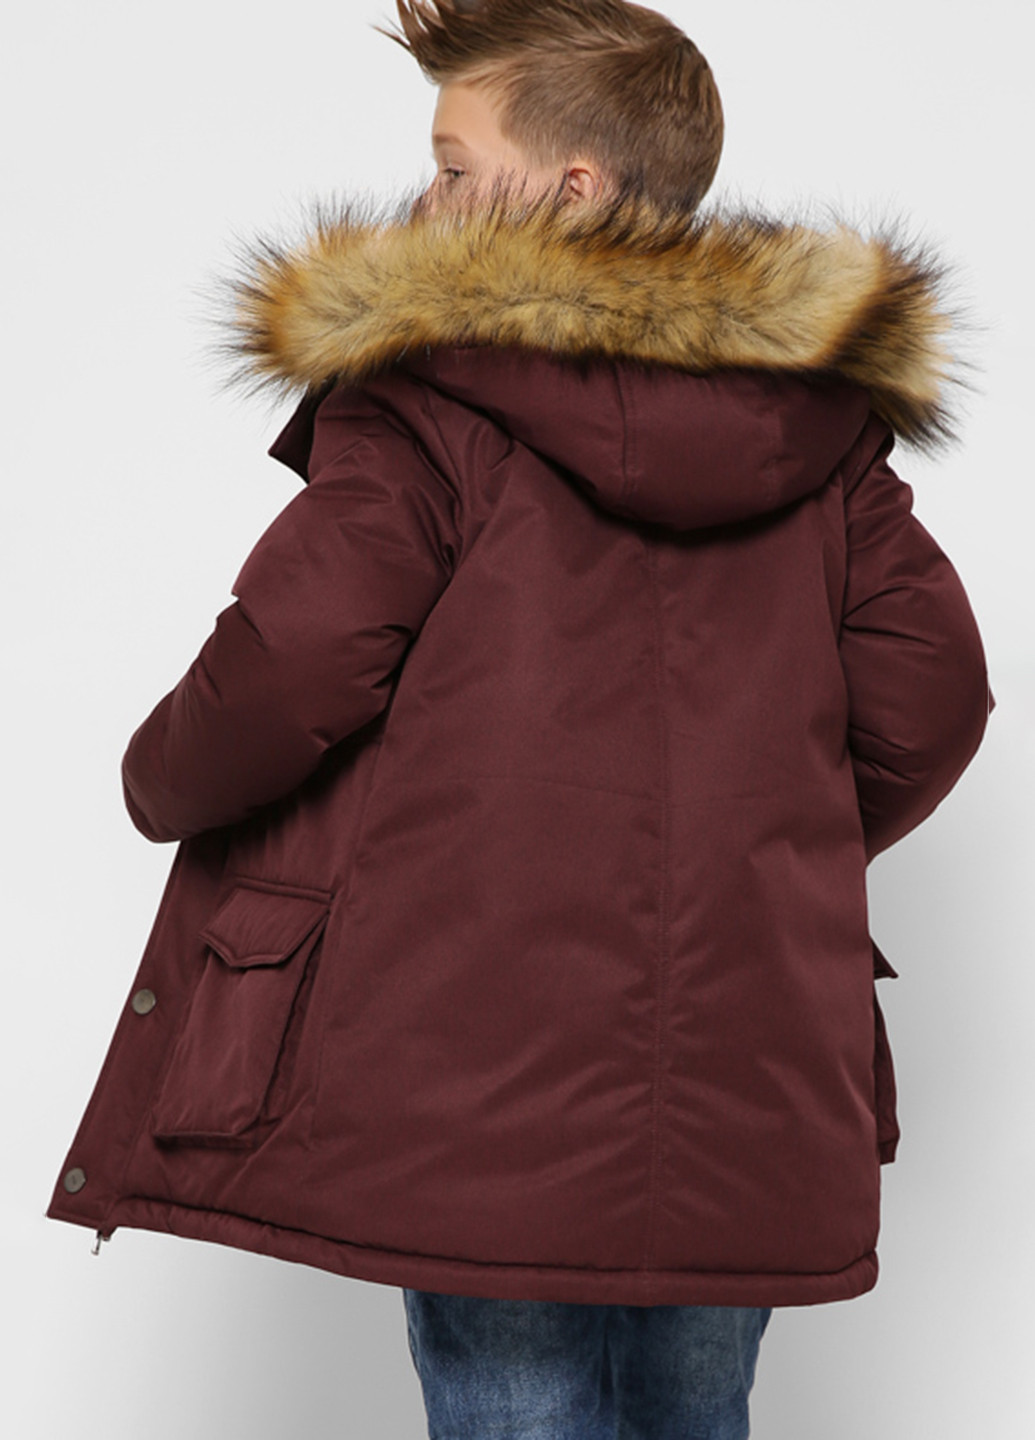 Бордовая зимняя бордовая зимняя куртка для мальчика Sinthia